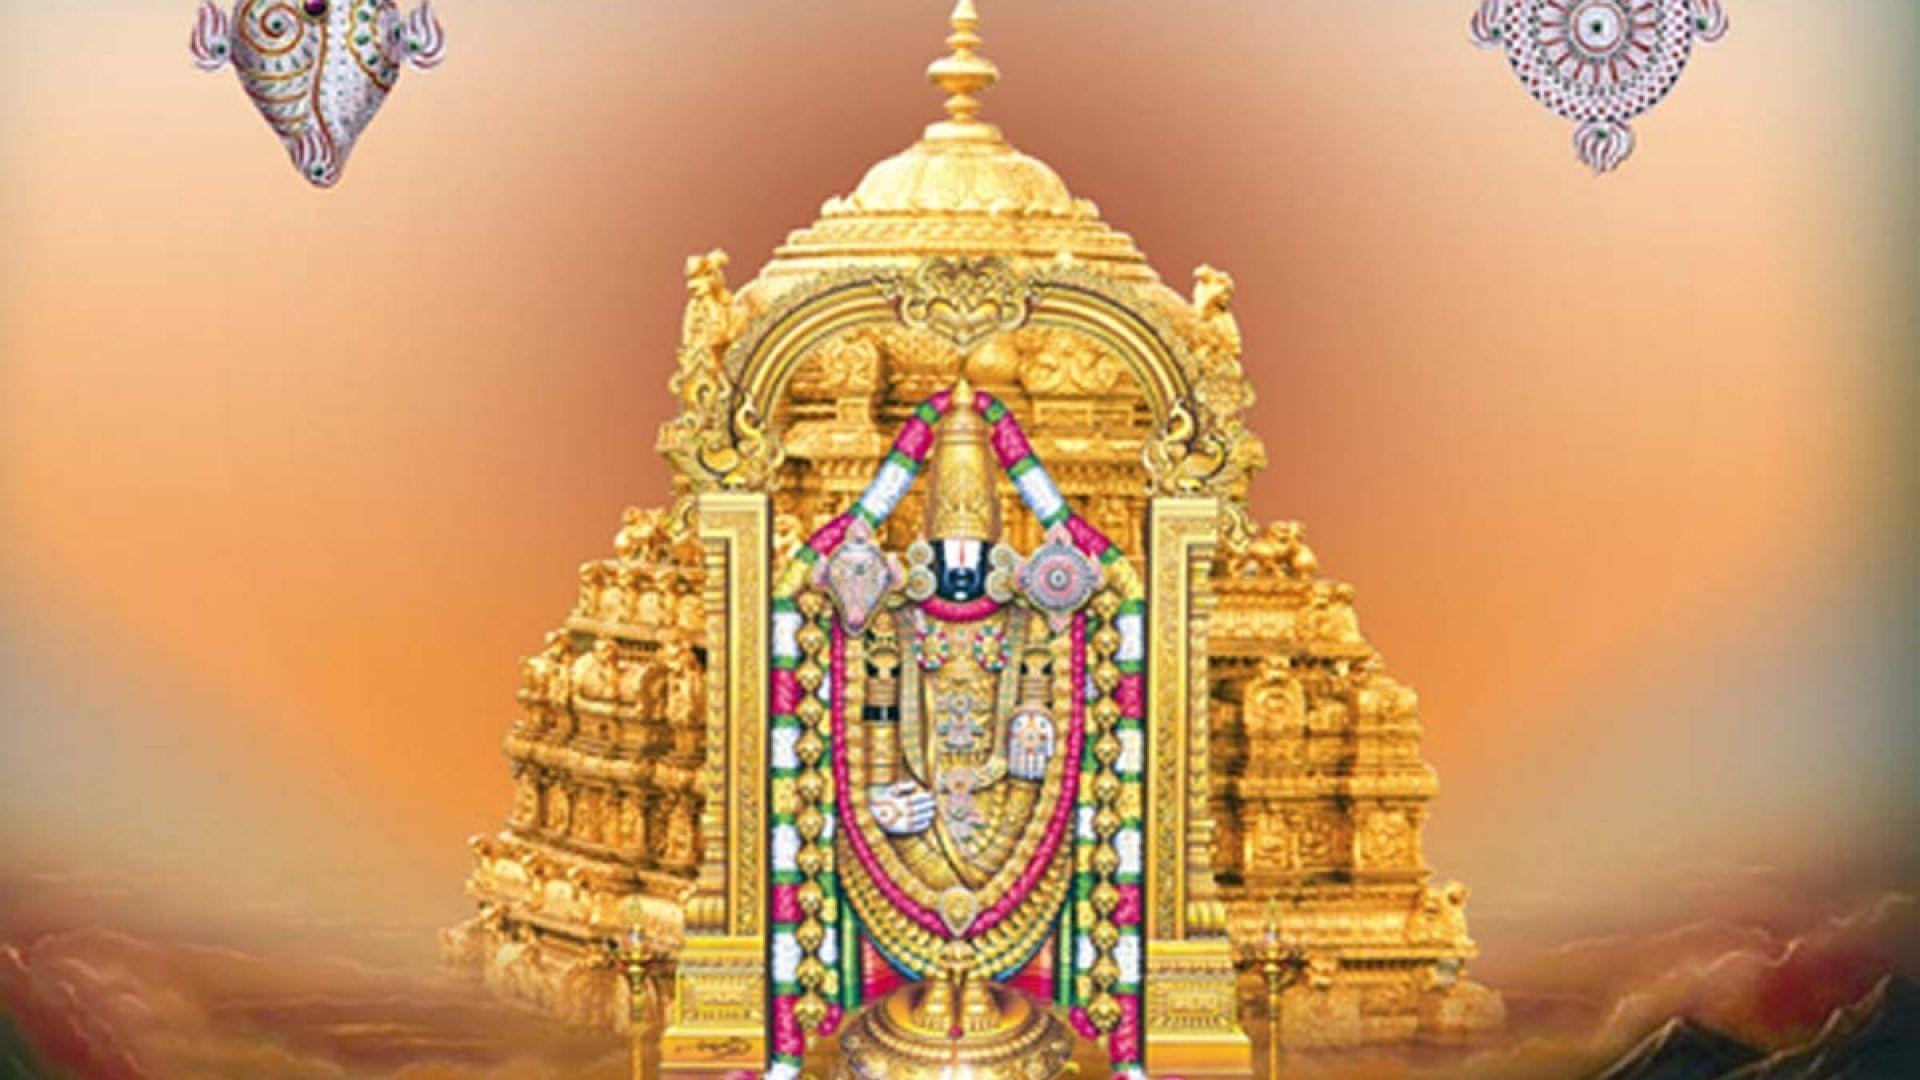 Lord Venkateswara 4K Wallpapers - Top Free Lord Venkateswara 4K